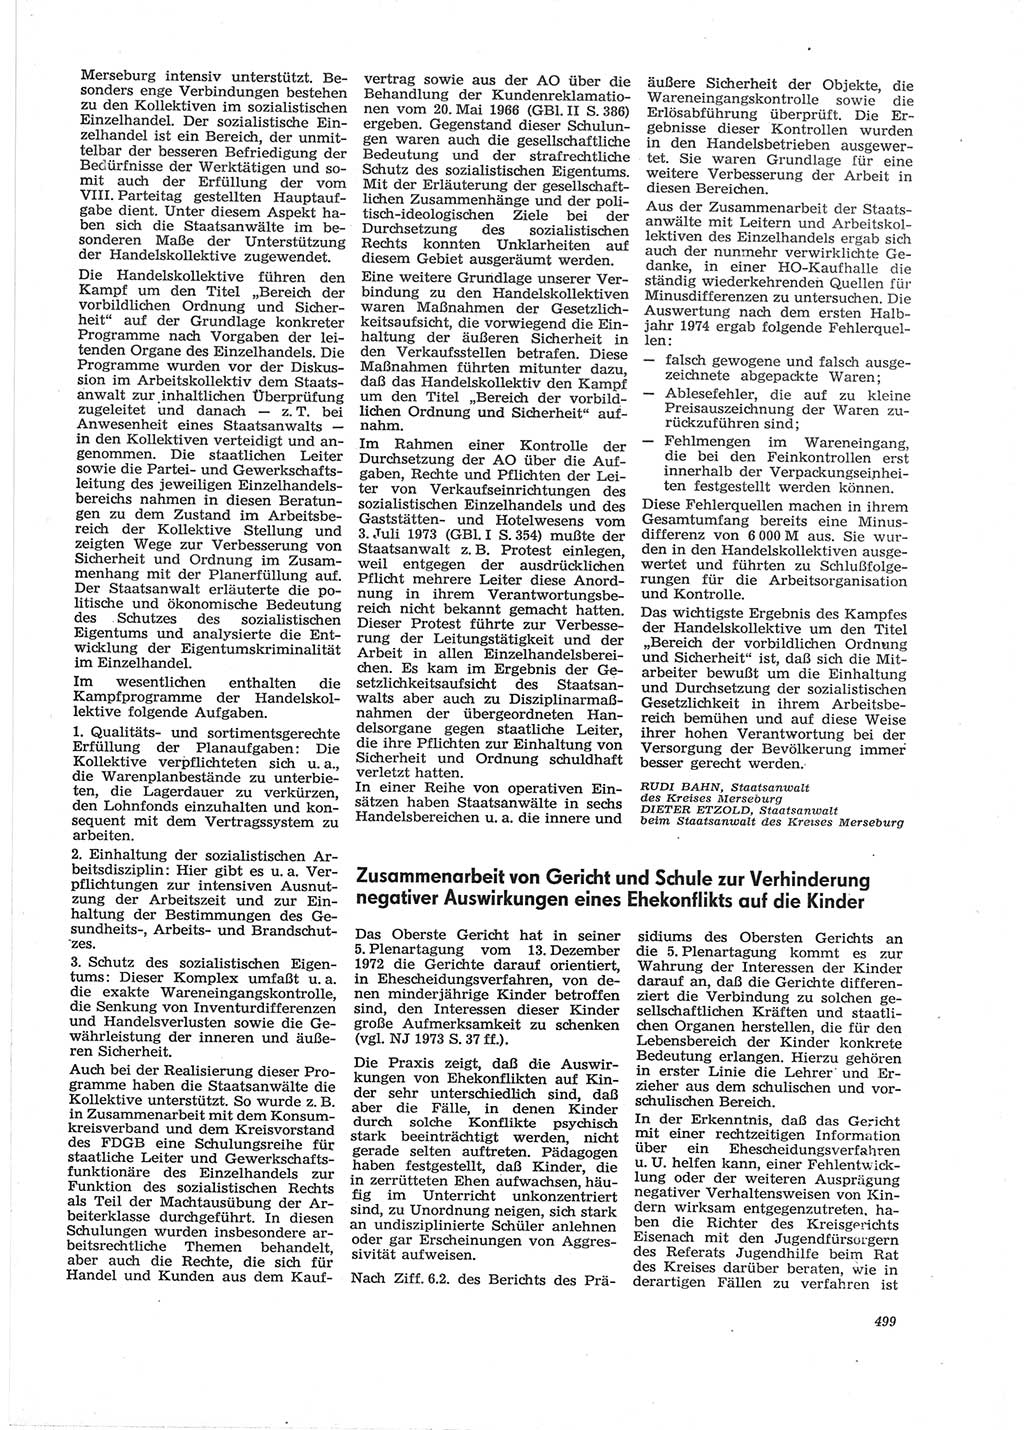 Neue Justiz (NJ), Zeitschrift für Recht und Rechtswissenschaft [Deutsche Demokratische Republik (DDR)], 28. Jahrgang 1974, Seite 499 (NJ DDR 1974, S. 499)